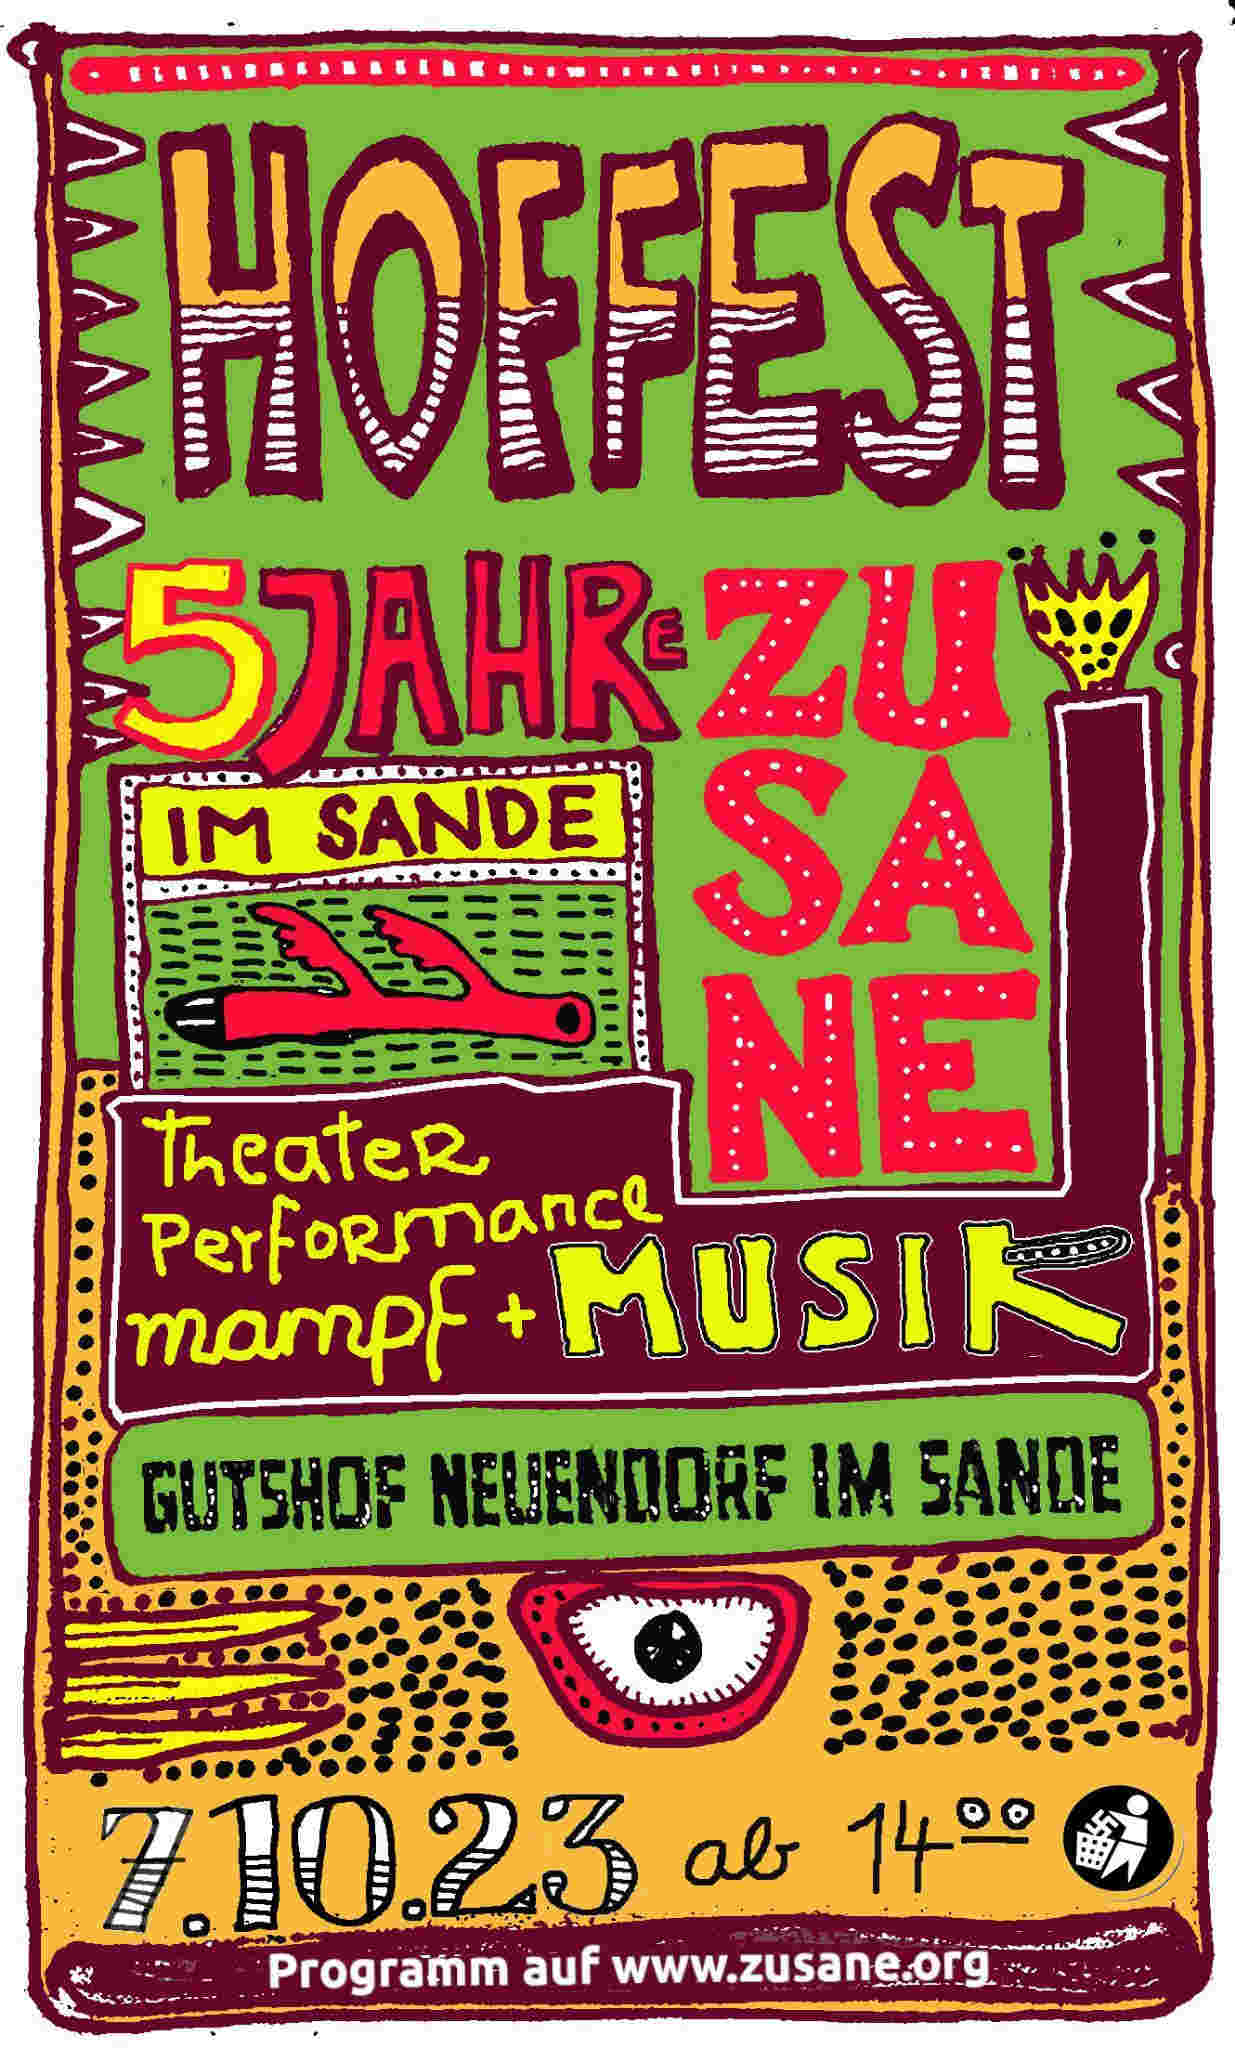 Hoffest Zusane // 07.10. - save the date